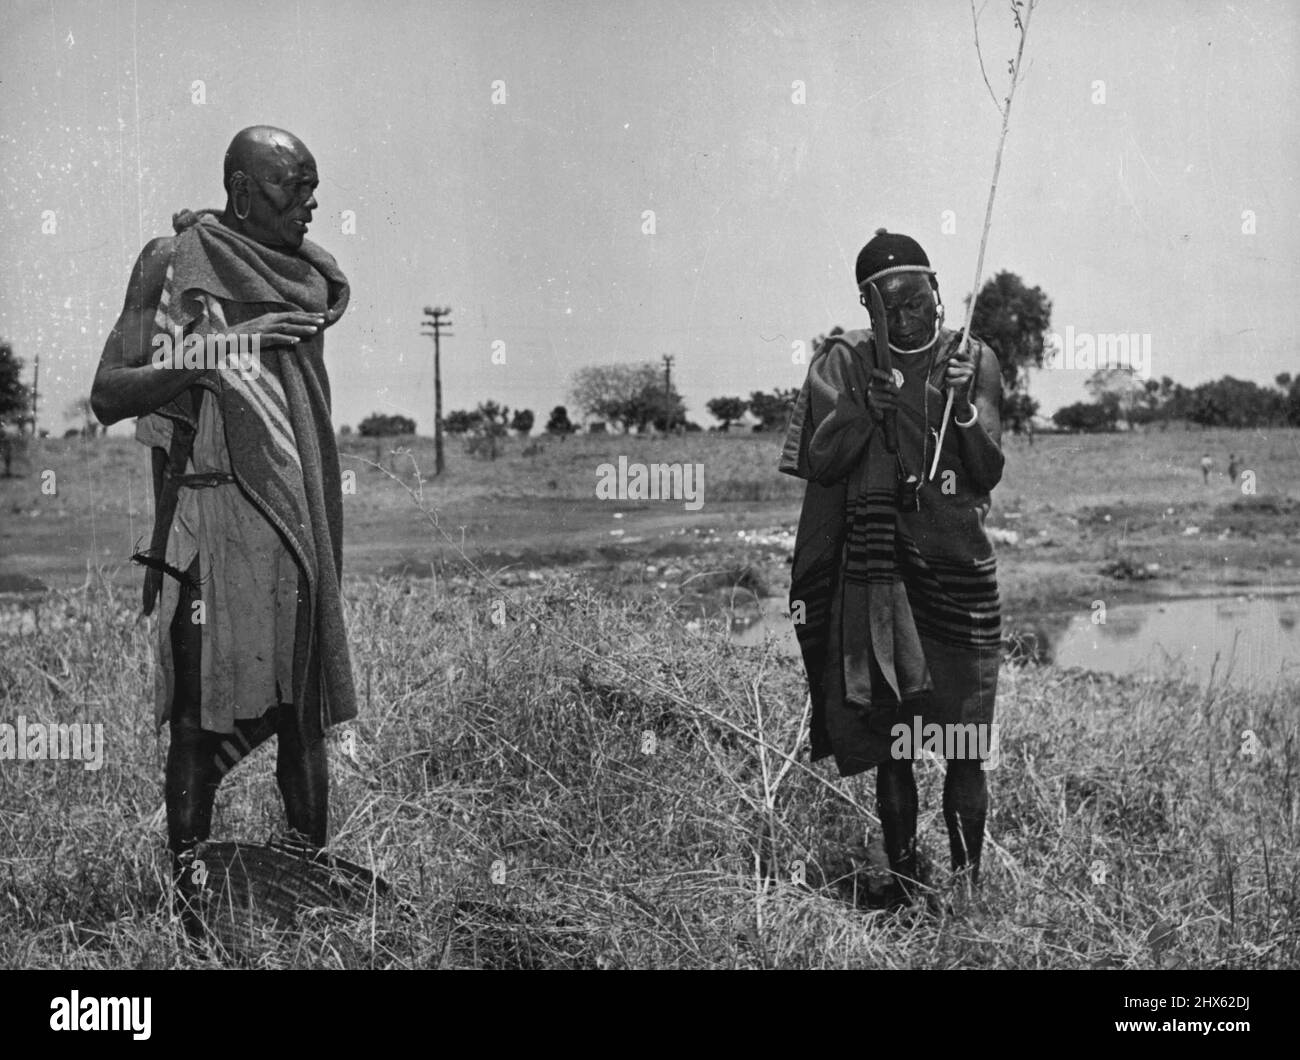 À gauche, Gichire, ancien et membre du tribunal africain de Kiambu, commence à couper les branches de la Migere Bush, traditionnellement utilisée comme support pour la pierre de Thenge dans les cérémonies. Sur la droite se trouve Mwaura, six-pieds-quatre pouces de hauteur et le Caliban de la pièce. Ils forment l'équipe dans la cérémonie, Gicic, le cerveau courageux et sacré, Mwaura, l'exécutif et le milieu de la malédiction. 11 décembre 1952.;à gauche, Gichire, un aîné et membre du Kiambu African Tribuna Banque D'Images